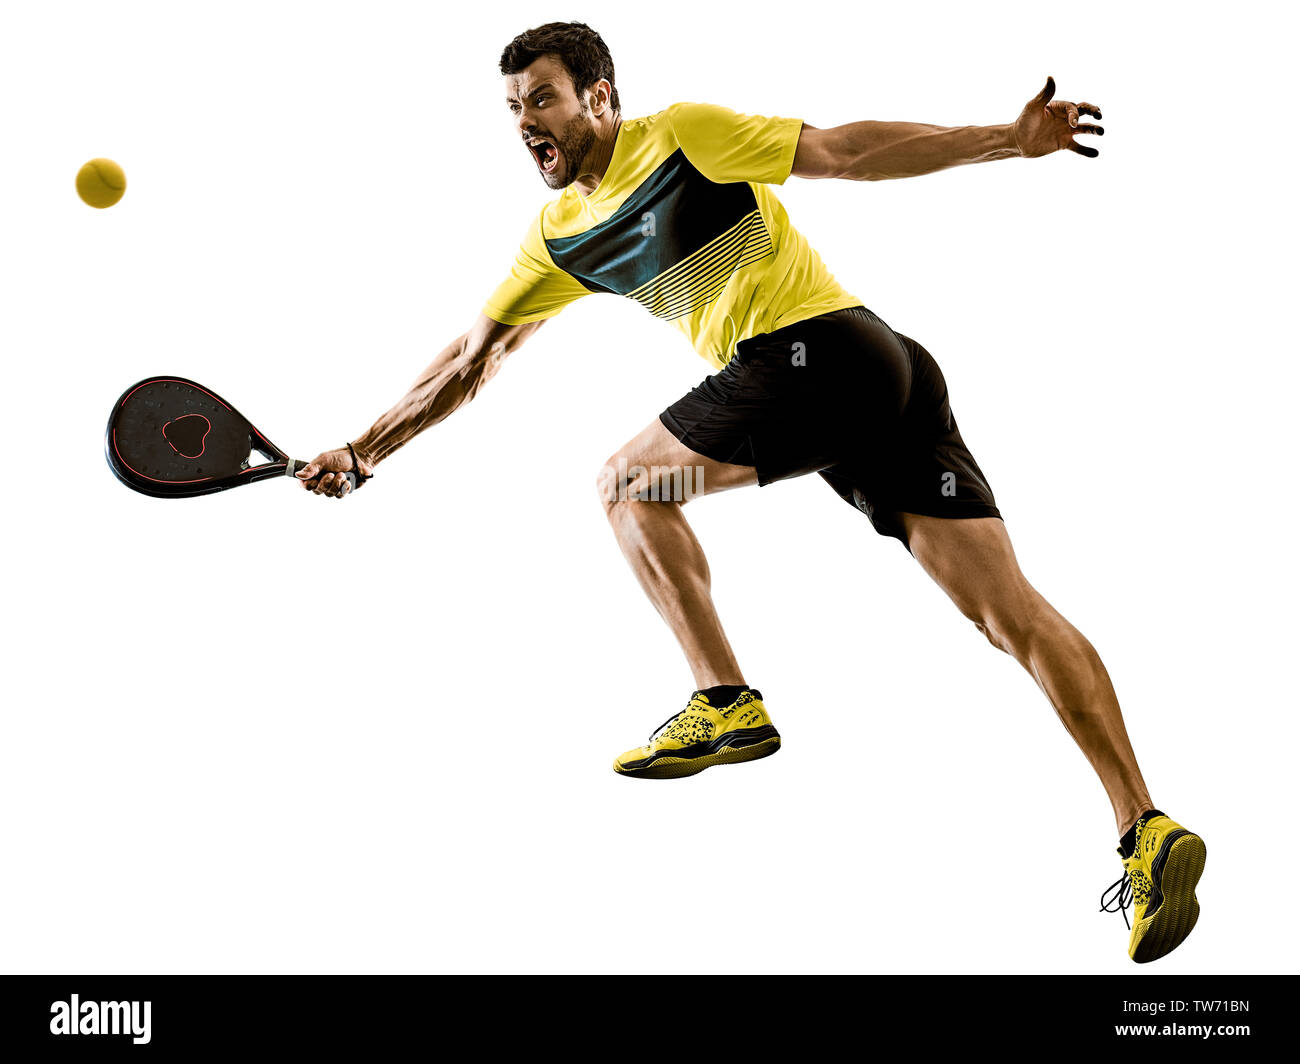 Hombre Jugando Pádel Tenis Aislado Con Raqueta Recibiendo Un Balón Imagen  de archivo - Imagen de instructor, raqueta: 270151199